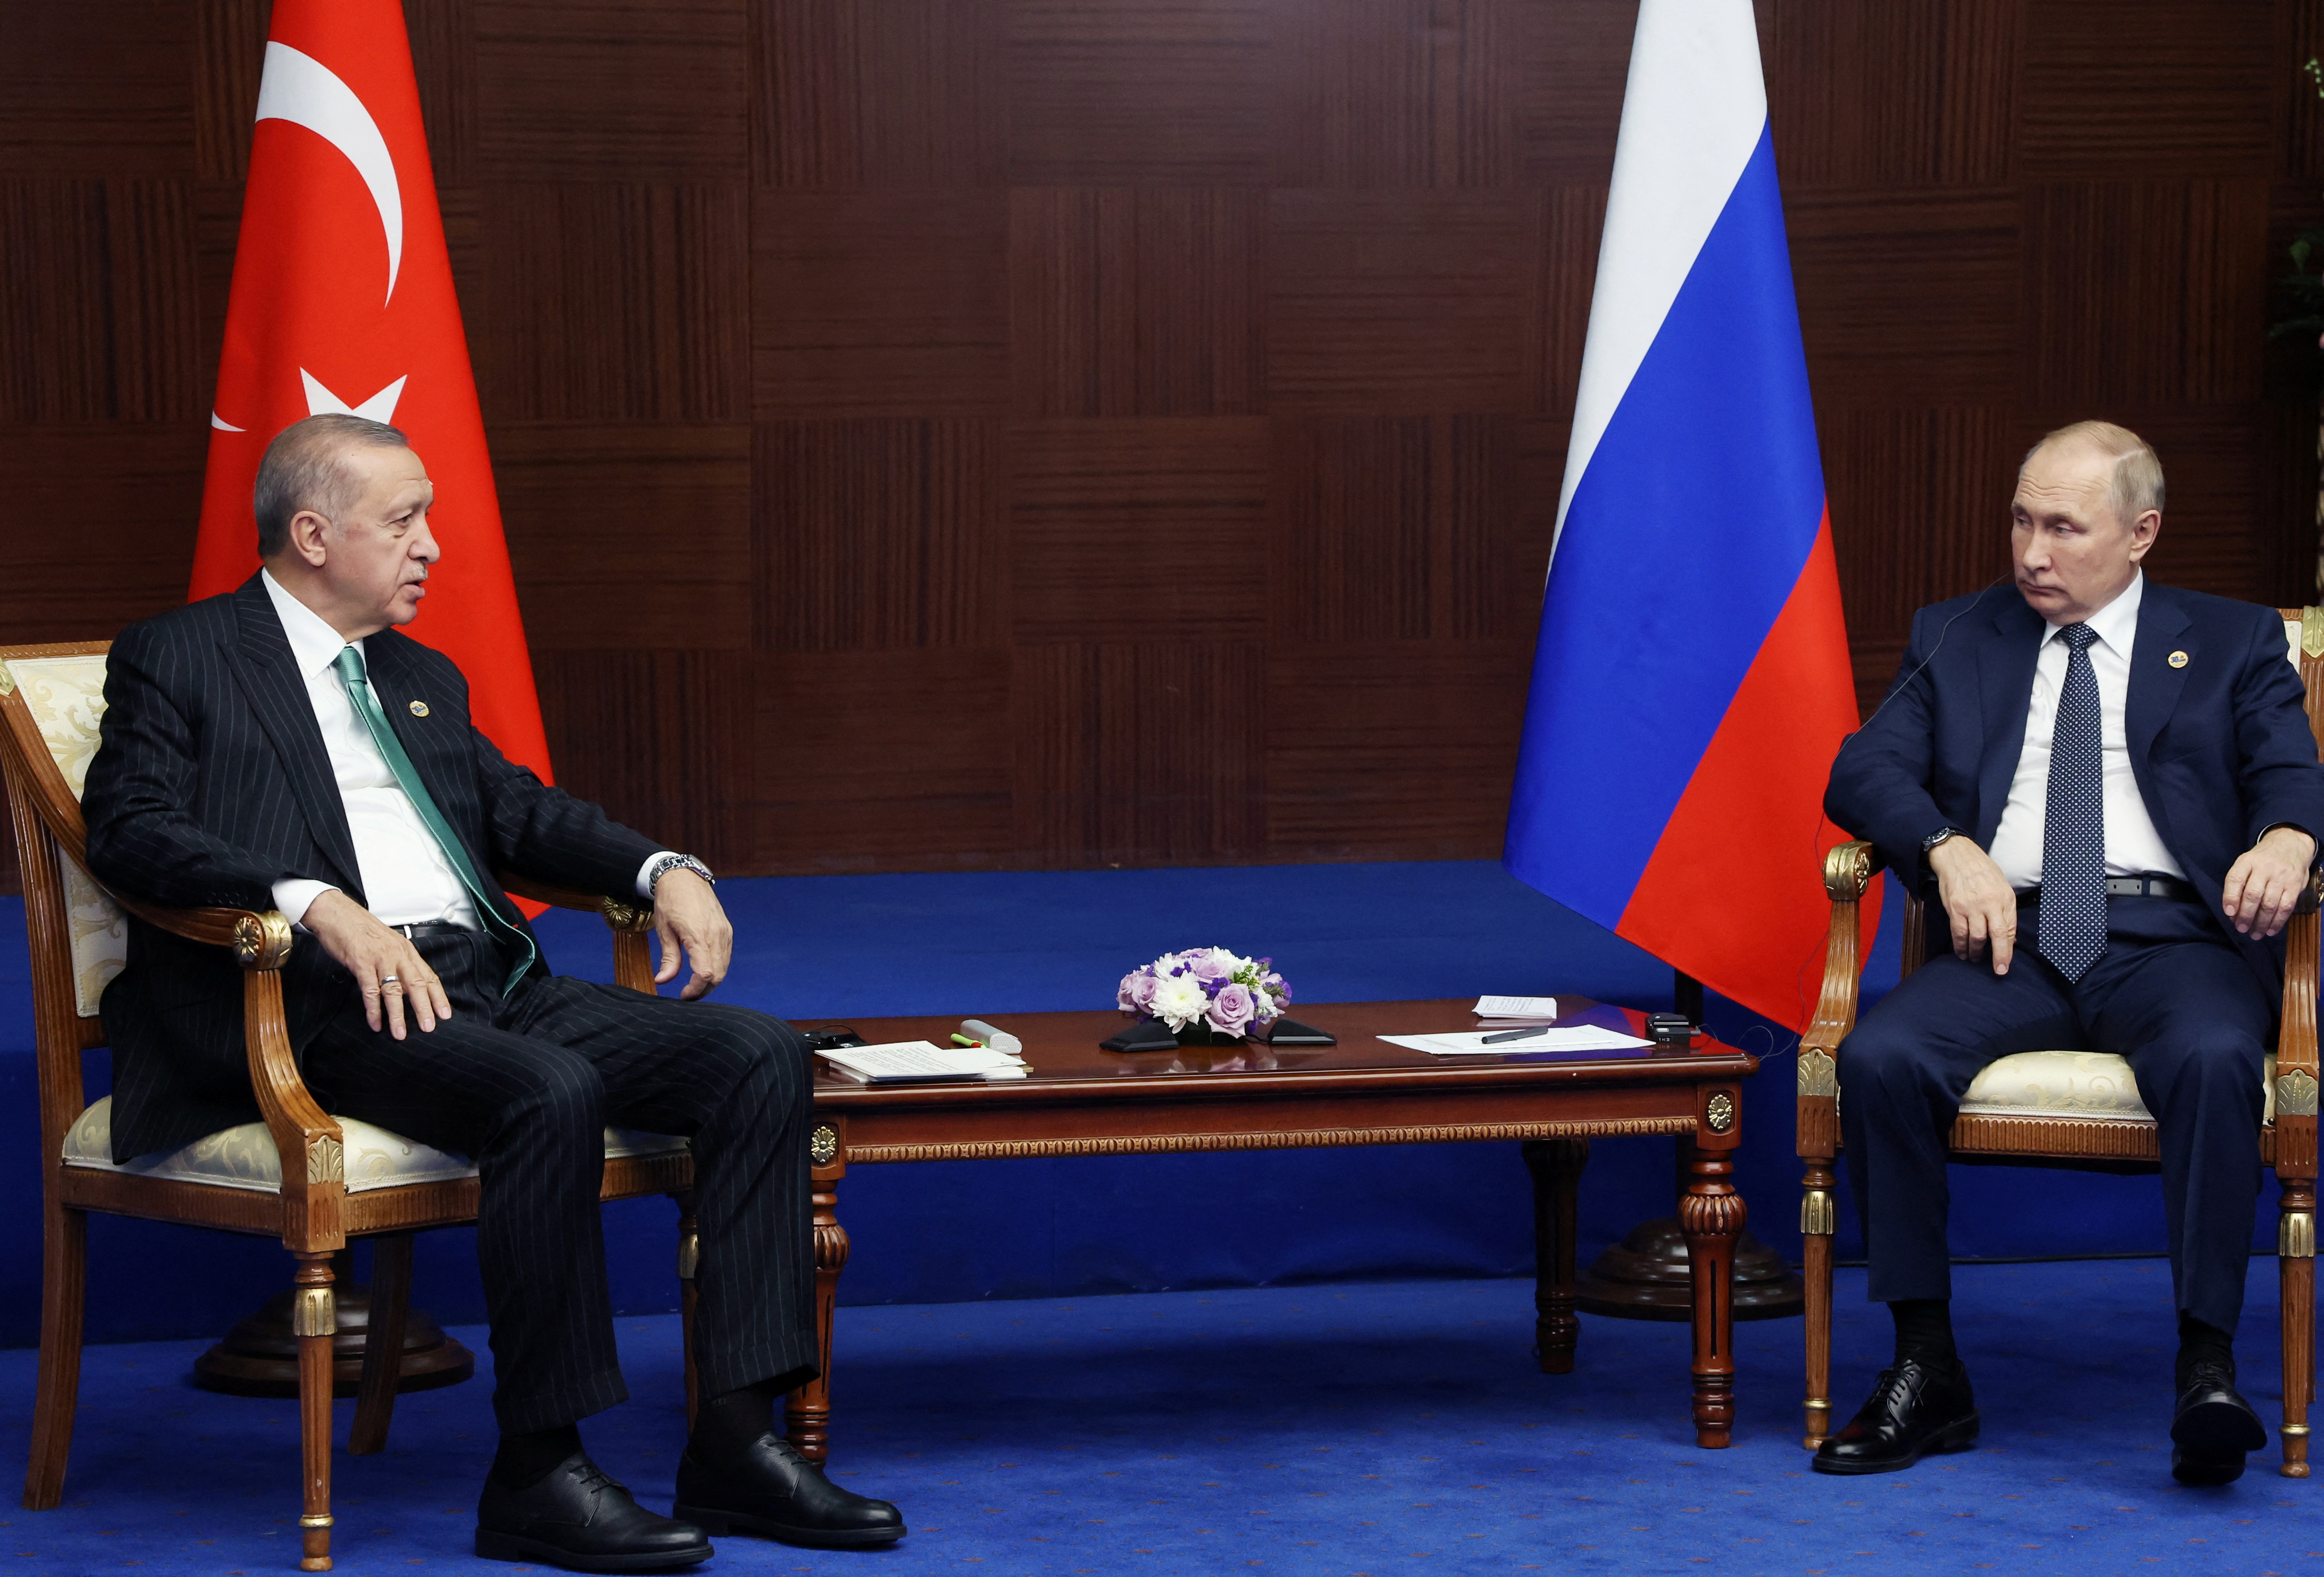 Heute war das vierte Treffen zwischen Putin und Erdogan in diesem Jahr.  (via Sputnik/Vyacheslav Prokofiev/ REUTERS)